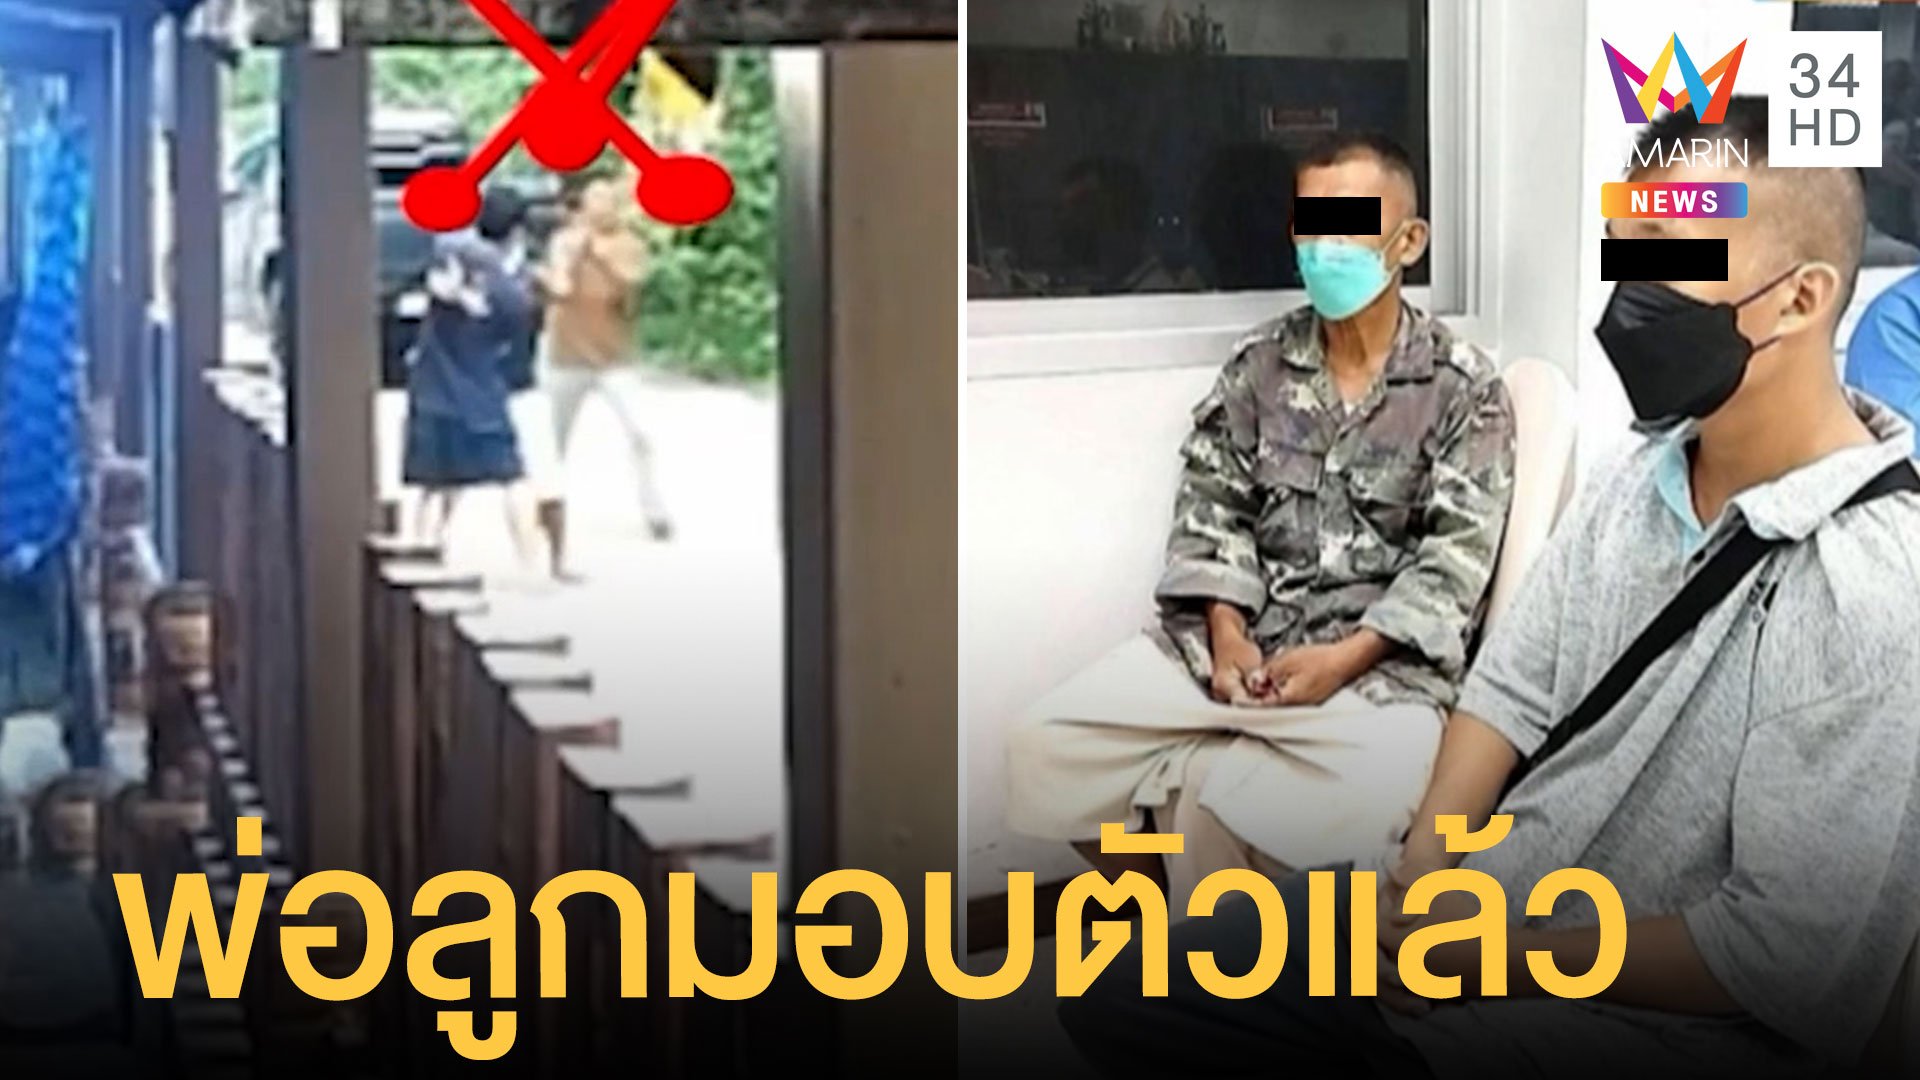 มอบตัวแล้ว 2 พ่อลูกทหารยิง "จ่าน้อย" เพื่อนบ้าน | ข่าวเที่ยงอมรินทร์ | 31 ก.ค. 65 | AMARIN TVHD34